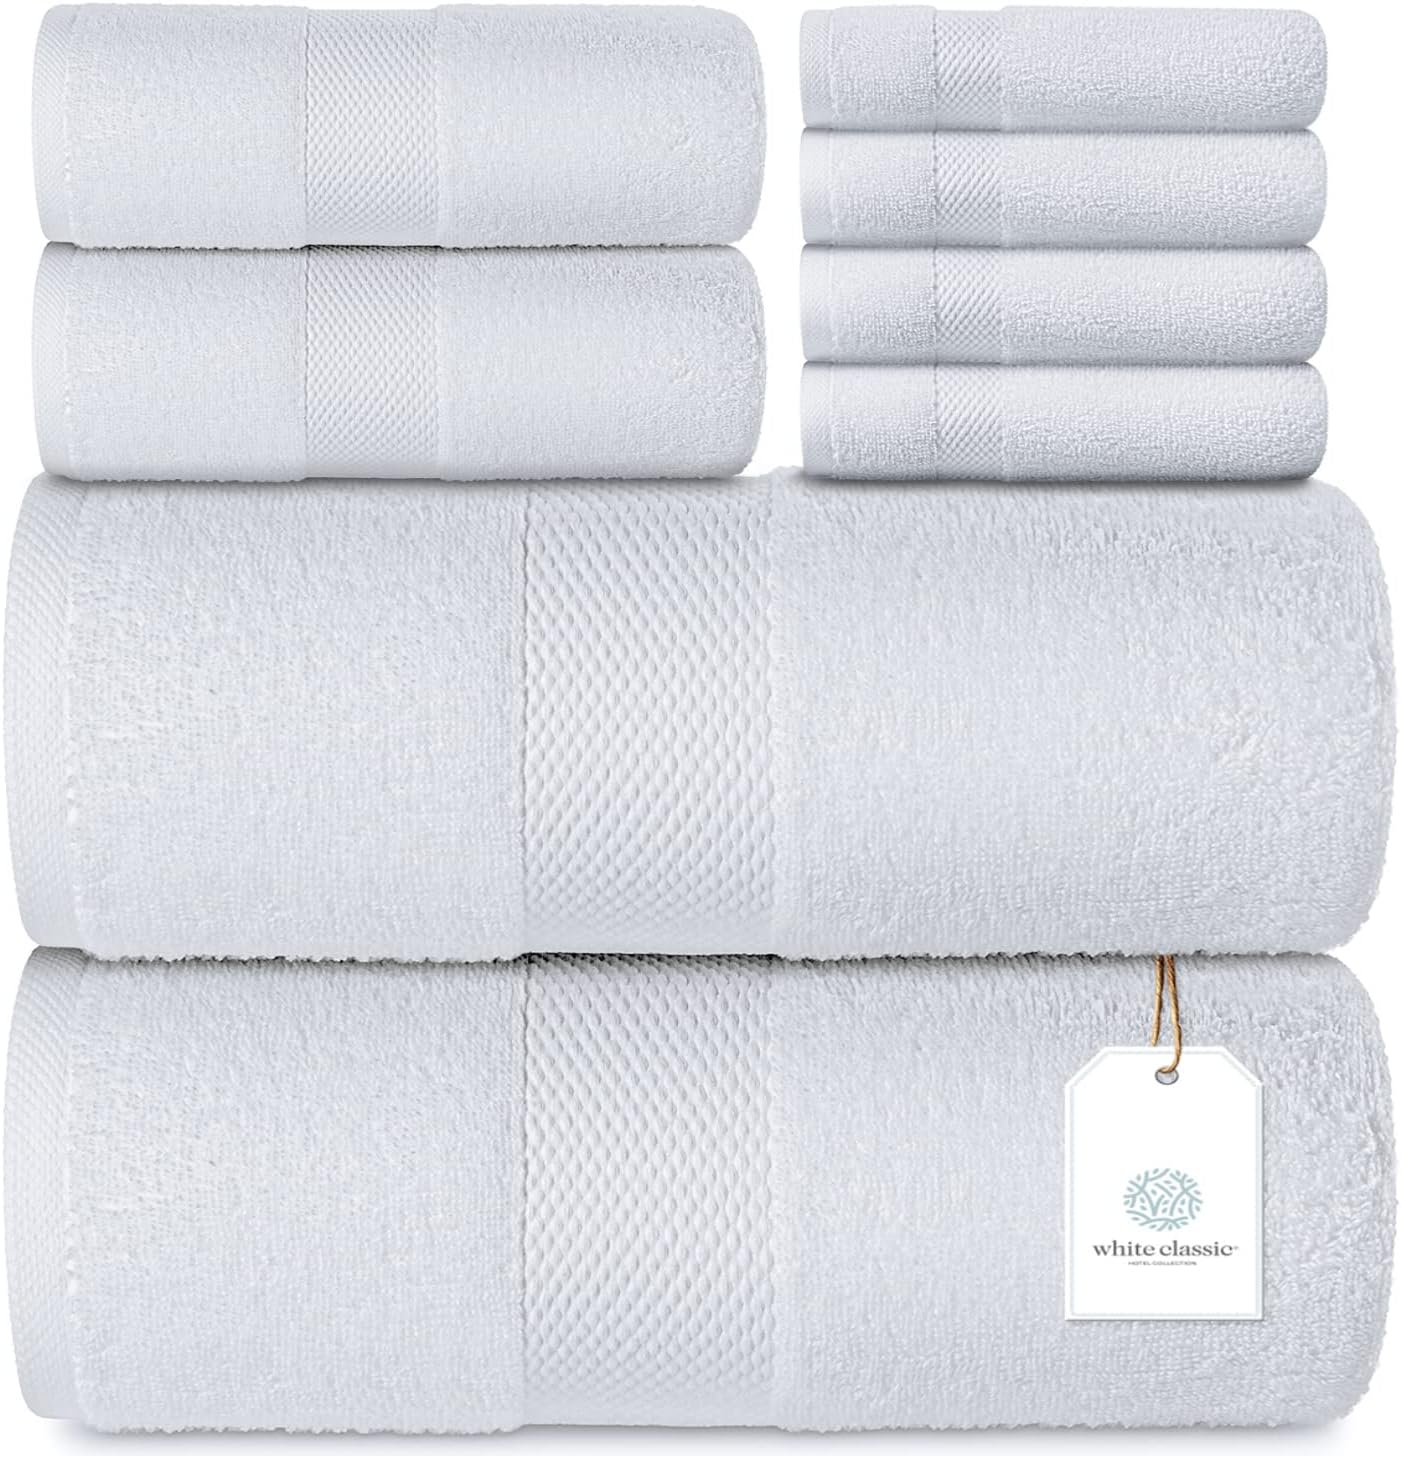 Juego de lujo, de toallas de baño para suelo – Algodón absorbente para el  hotel, spa, ducha y tina [No es una alfombra de baño], tiene un tamaño de  22